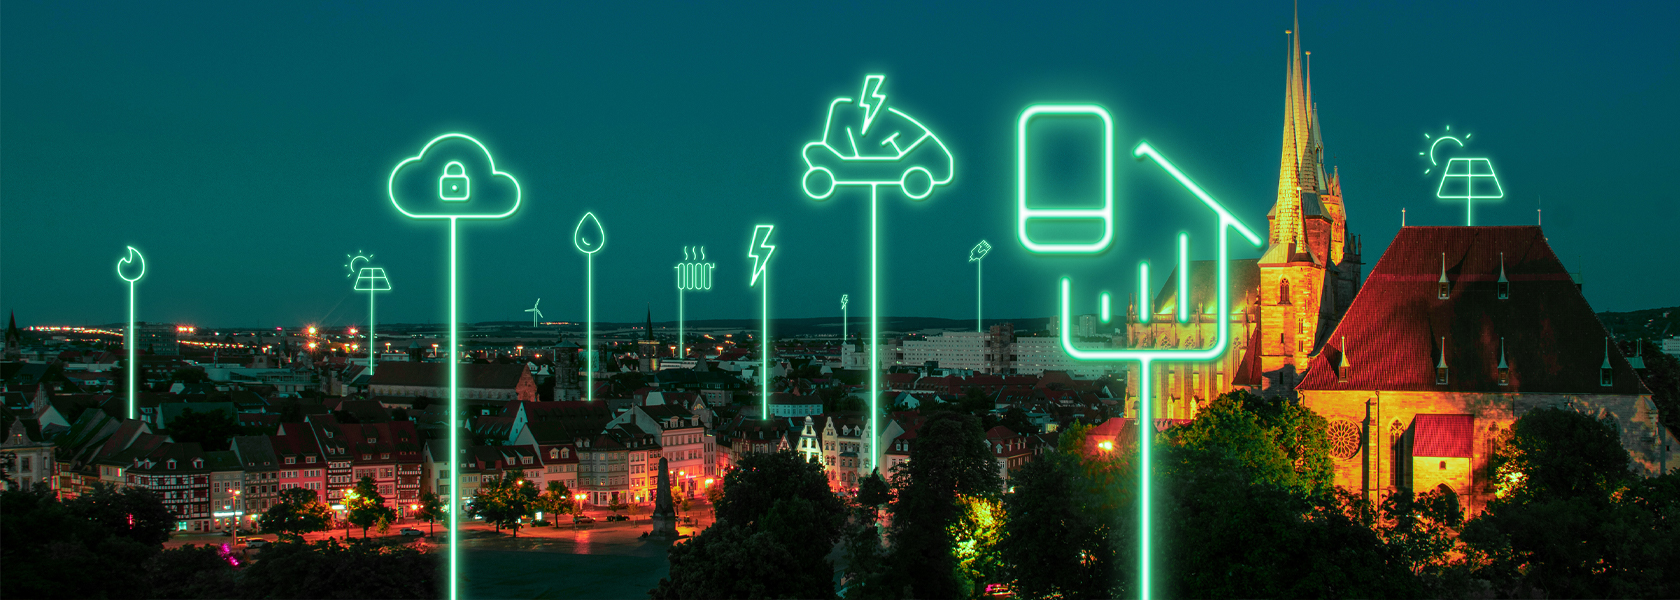 Leuchtende Icons von smarten Geräten am Nachthimmel von Erfurt